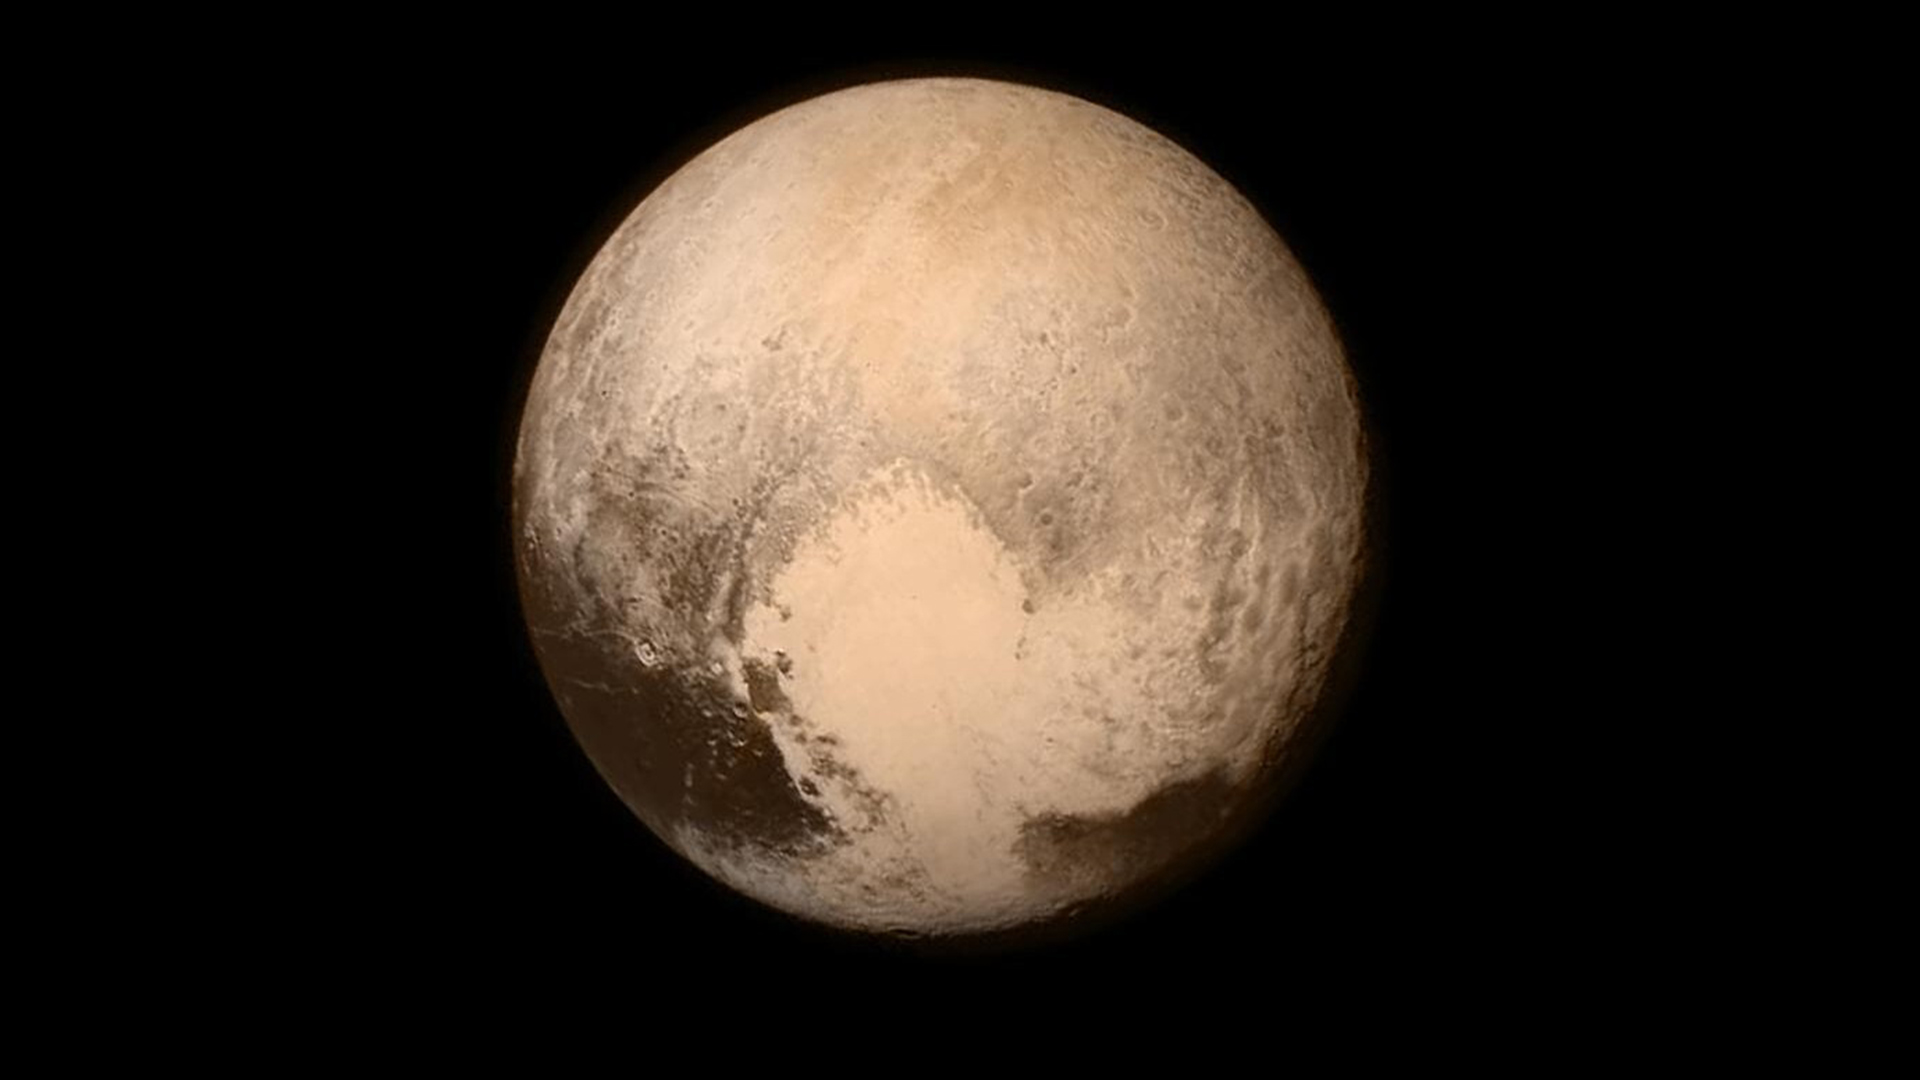 L’enorme “cuore” bianco di Plutone ha un’origine sorprendentemente violenta, suggerisce un nuovo studio